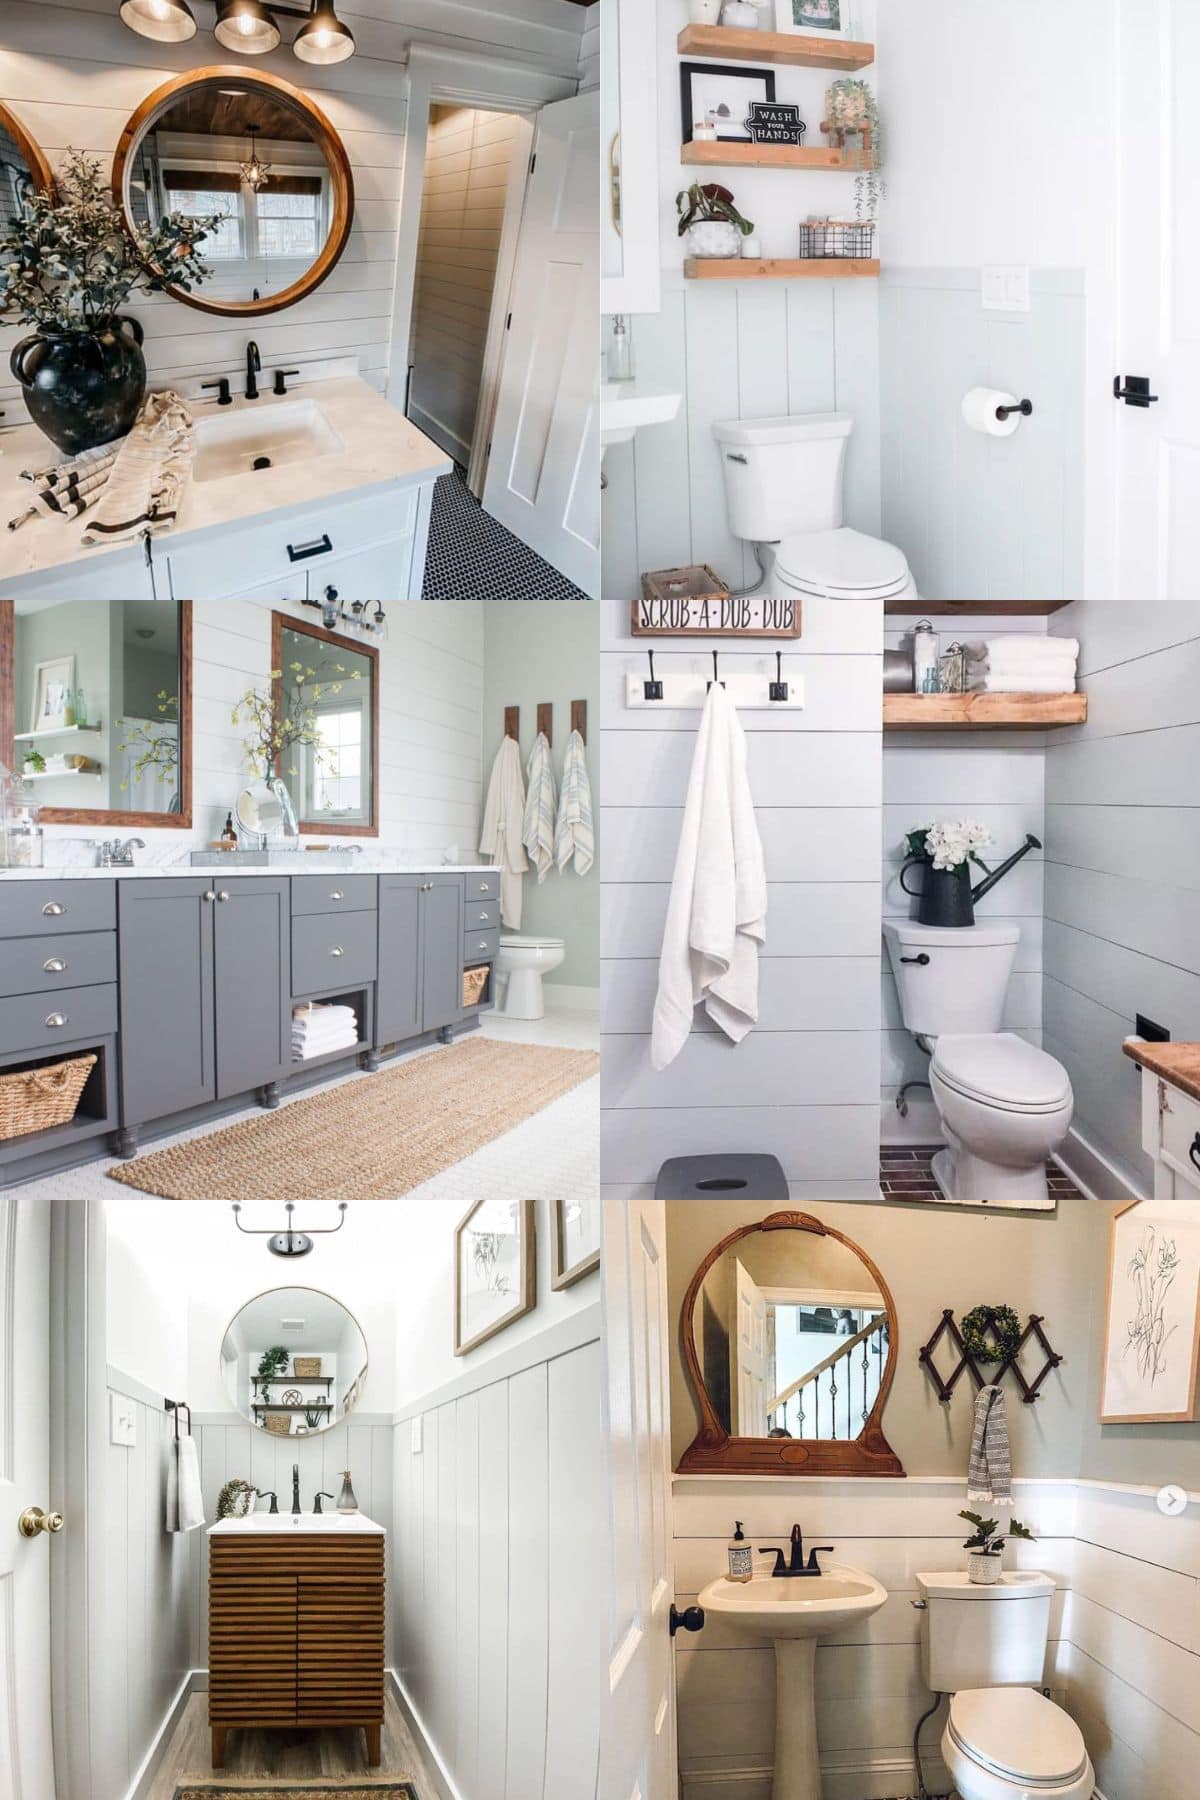 10 Shiplap Bathroom Wall Ideas for Your Bathroom Refresh